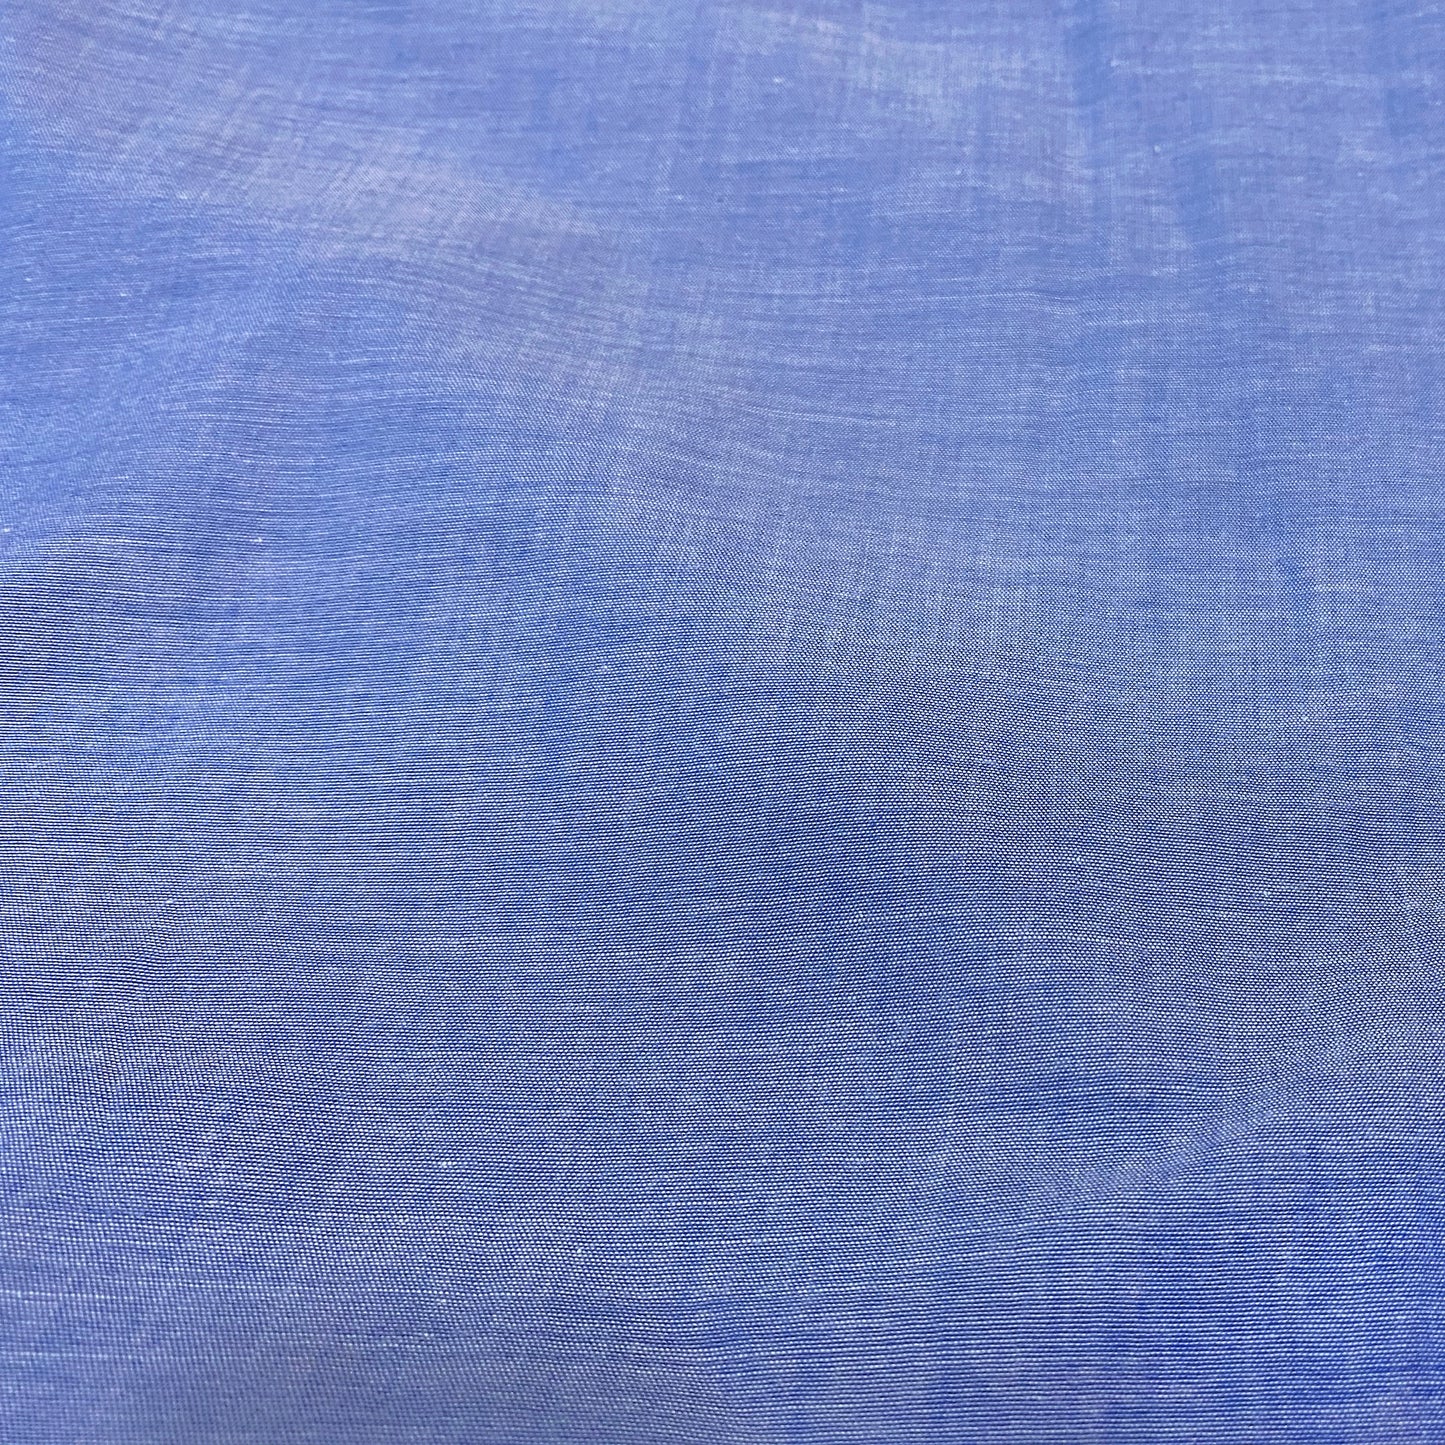 Plain Blue Cotton Fabric